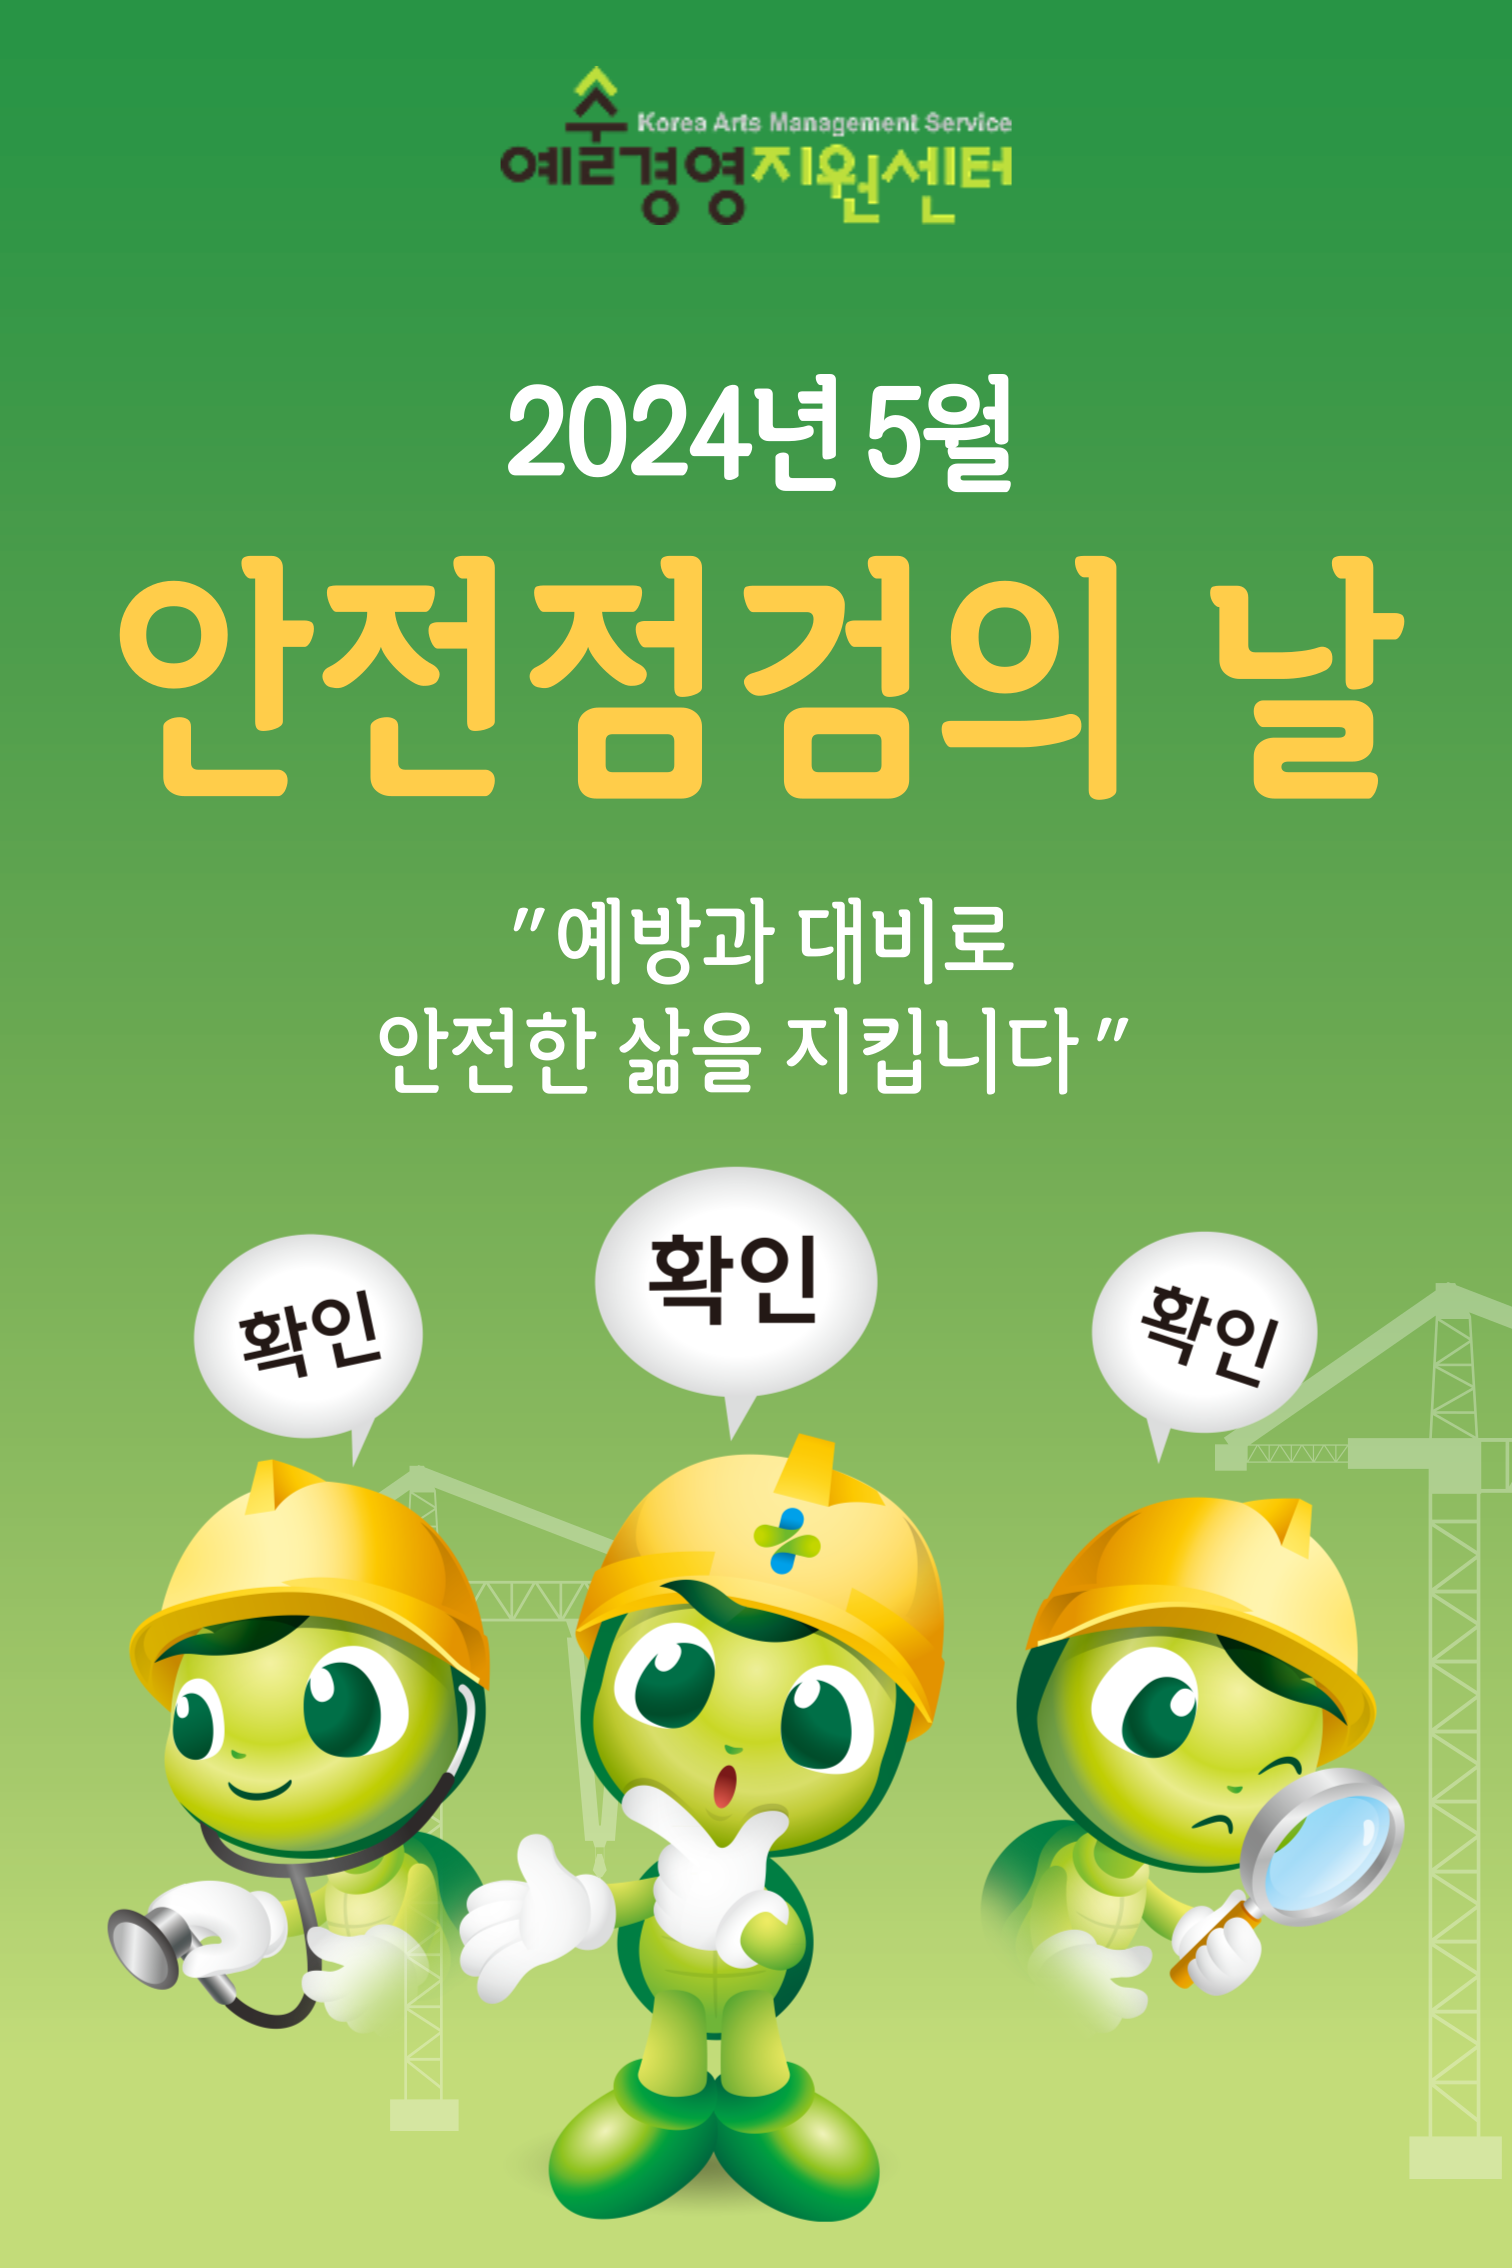 2024년 5월 (재)예술경영지원센터 안전점검의 날